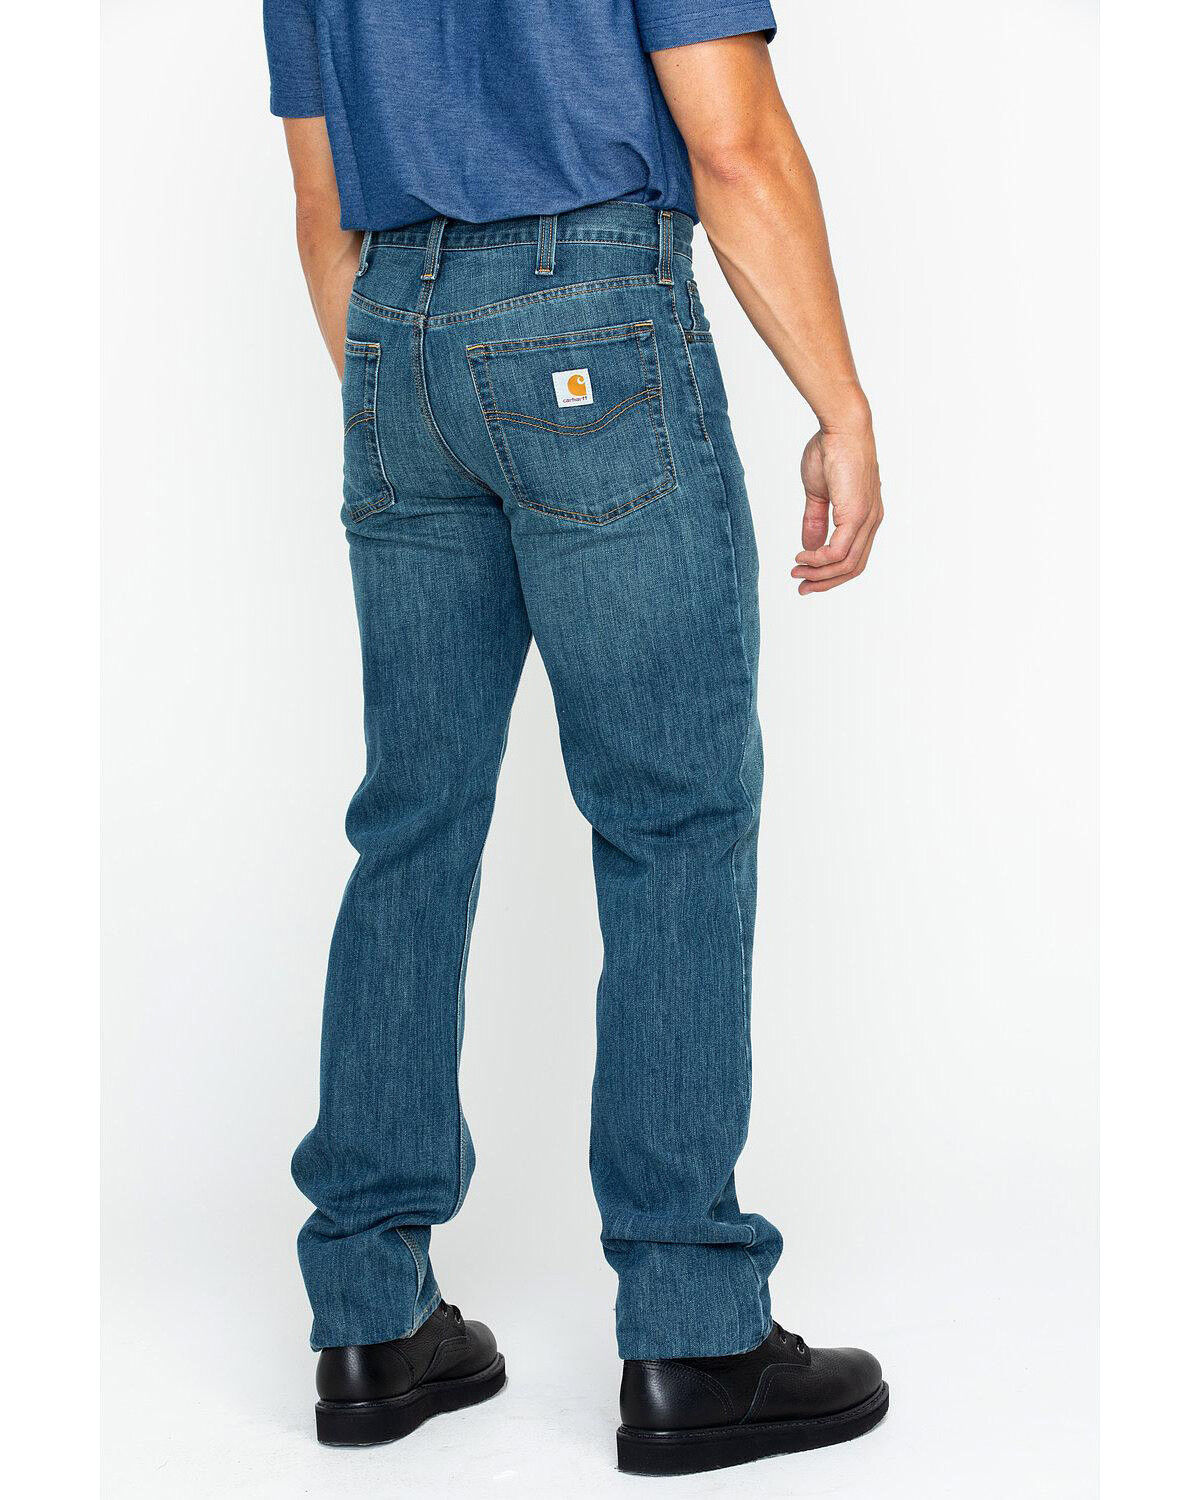 Men's Carhartt Slim Fit Jeans - Sheplers